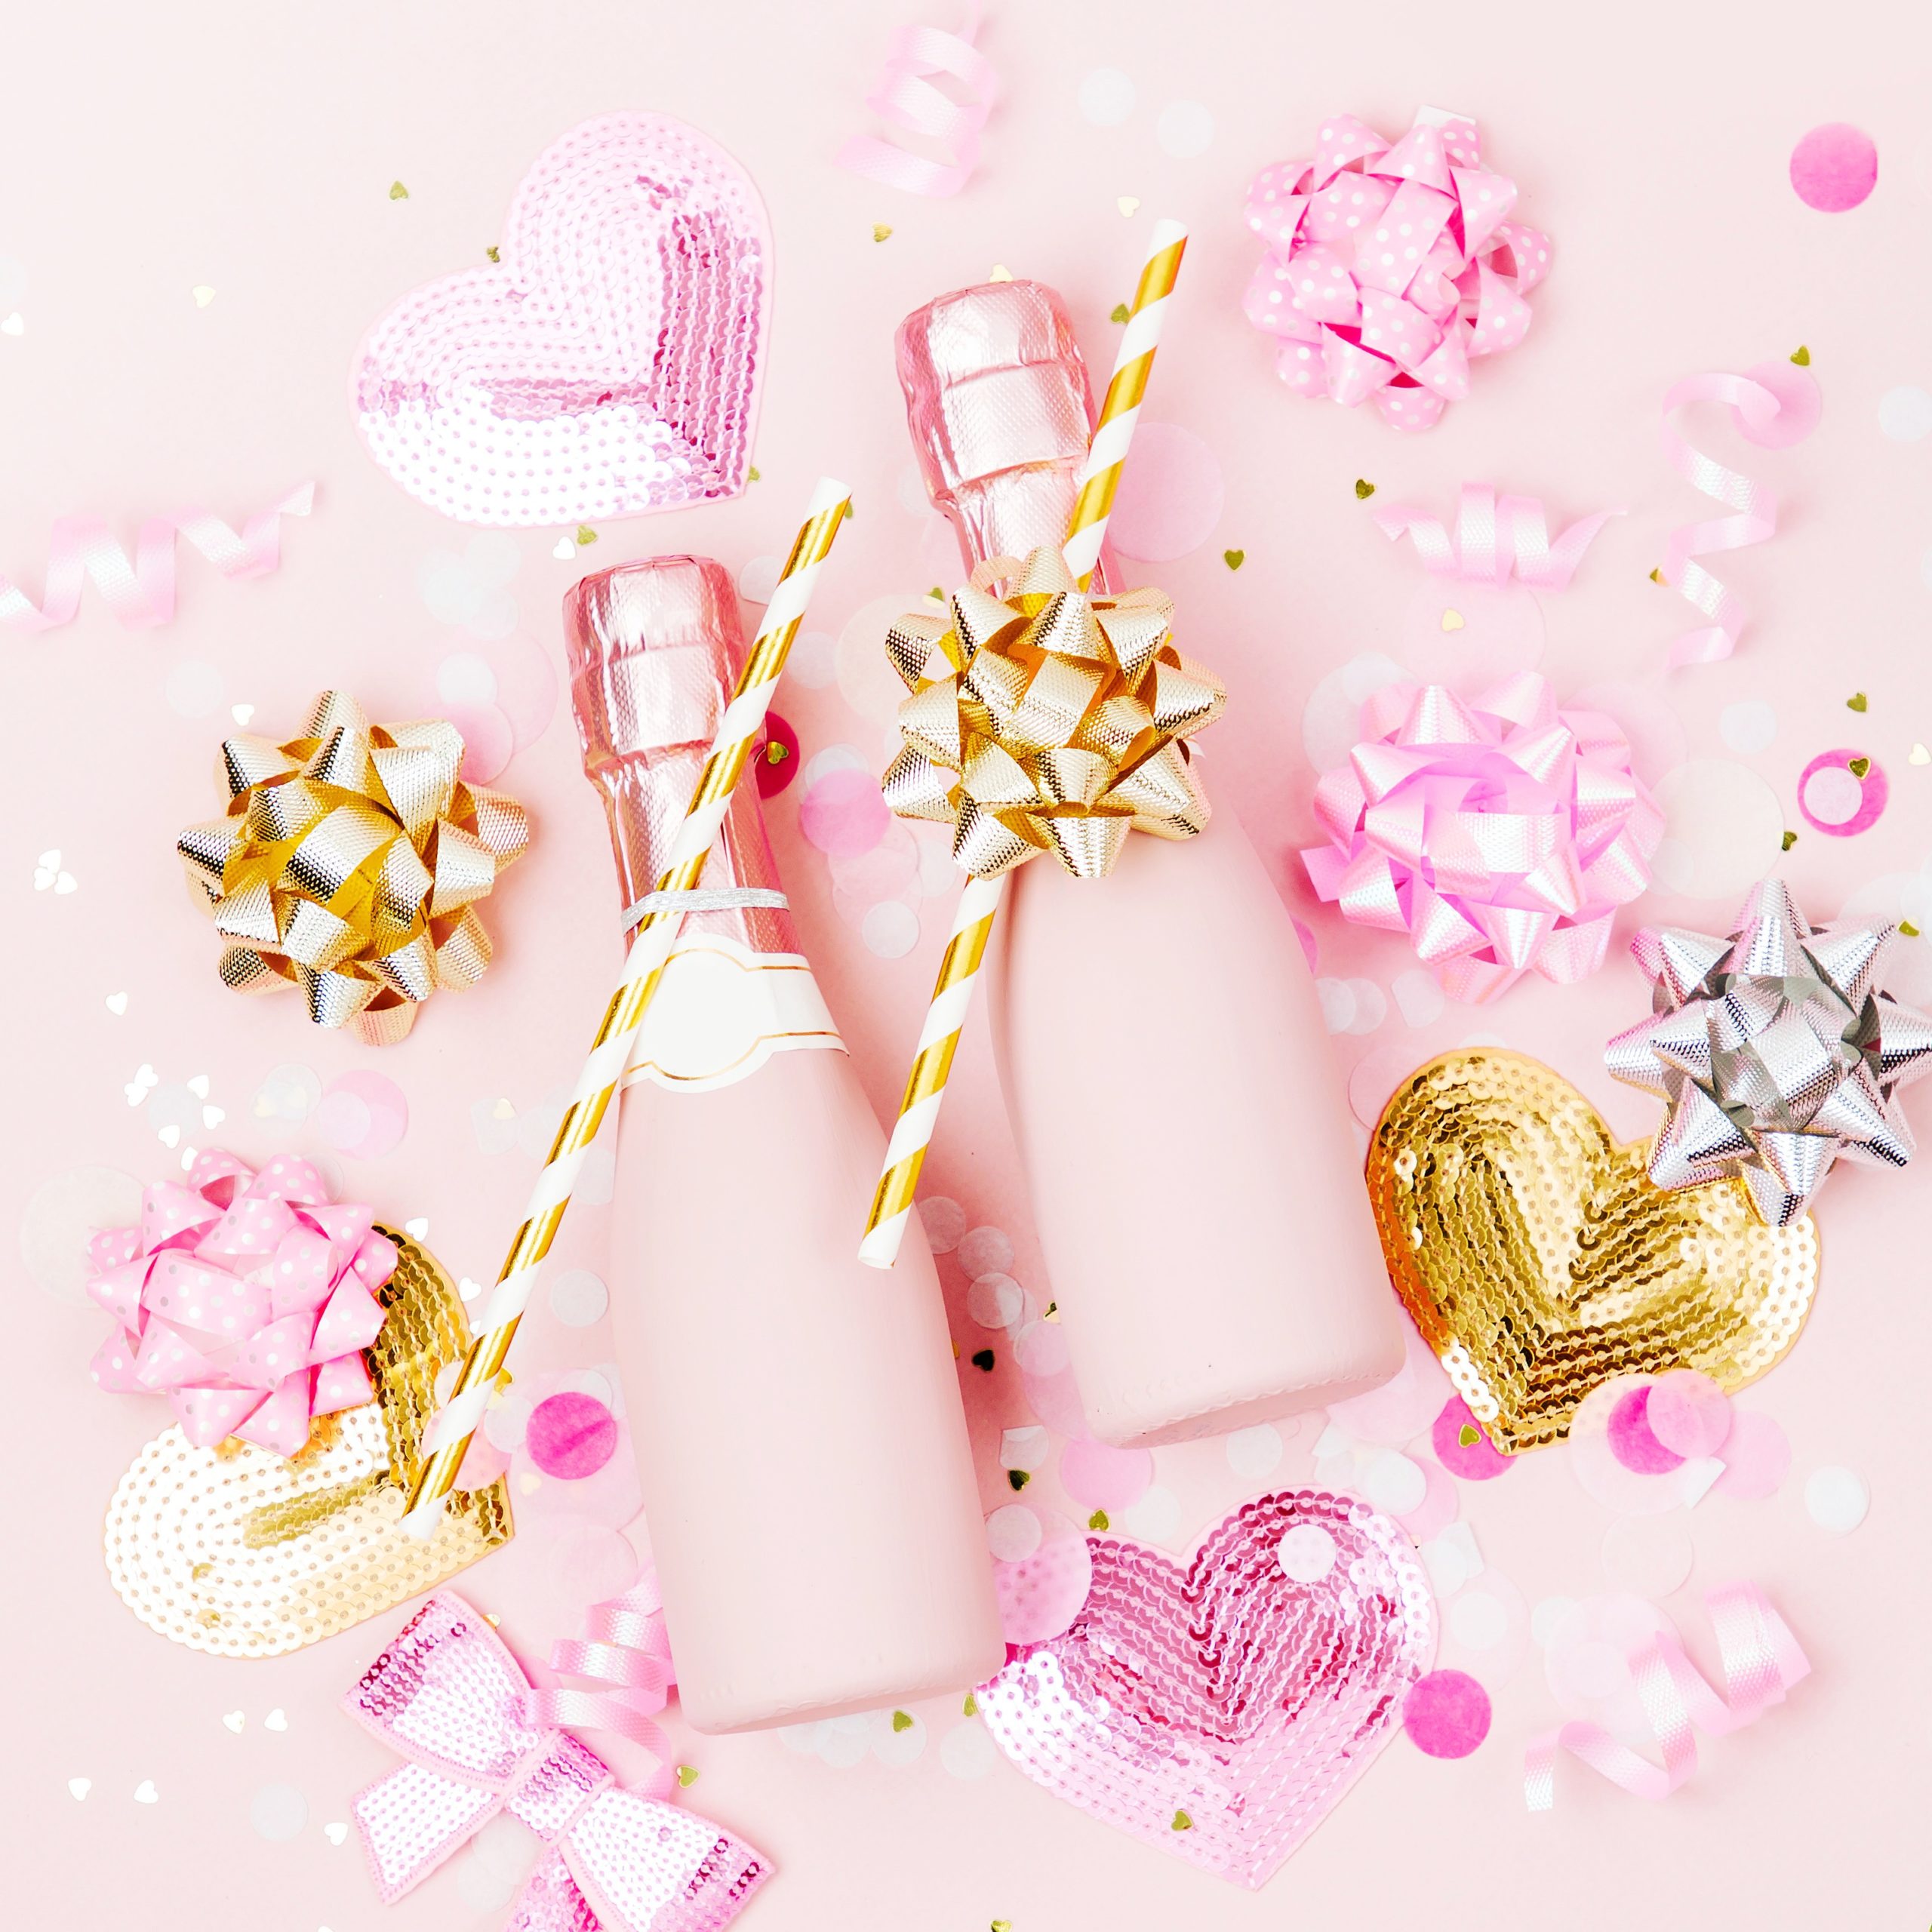 <img src="pink.jpg" alt="pink champagne bottles valentine's day date ideas"/> 